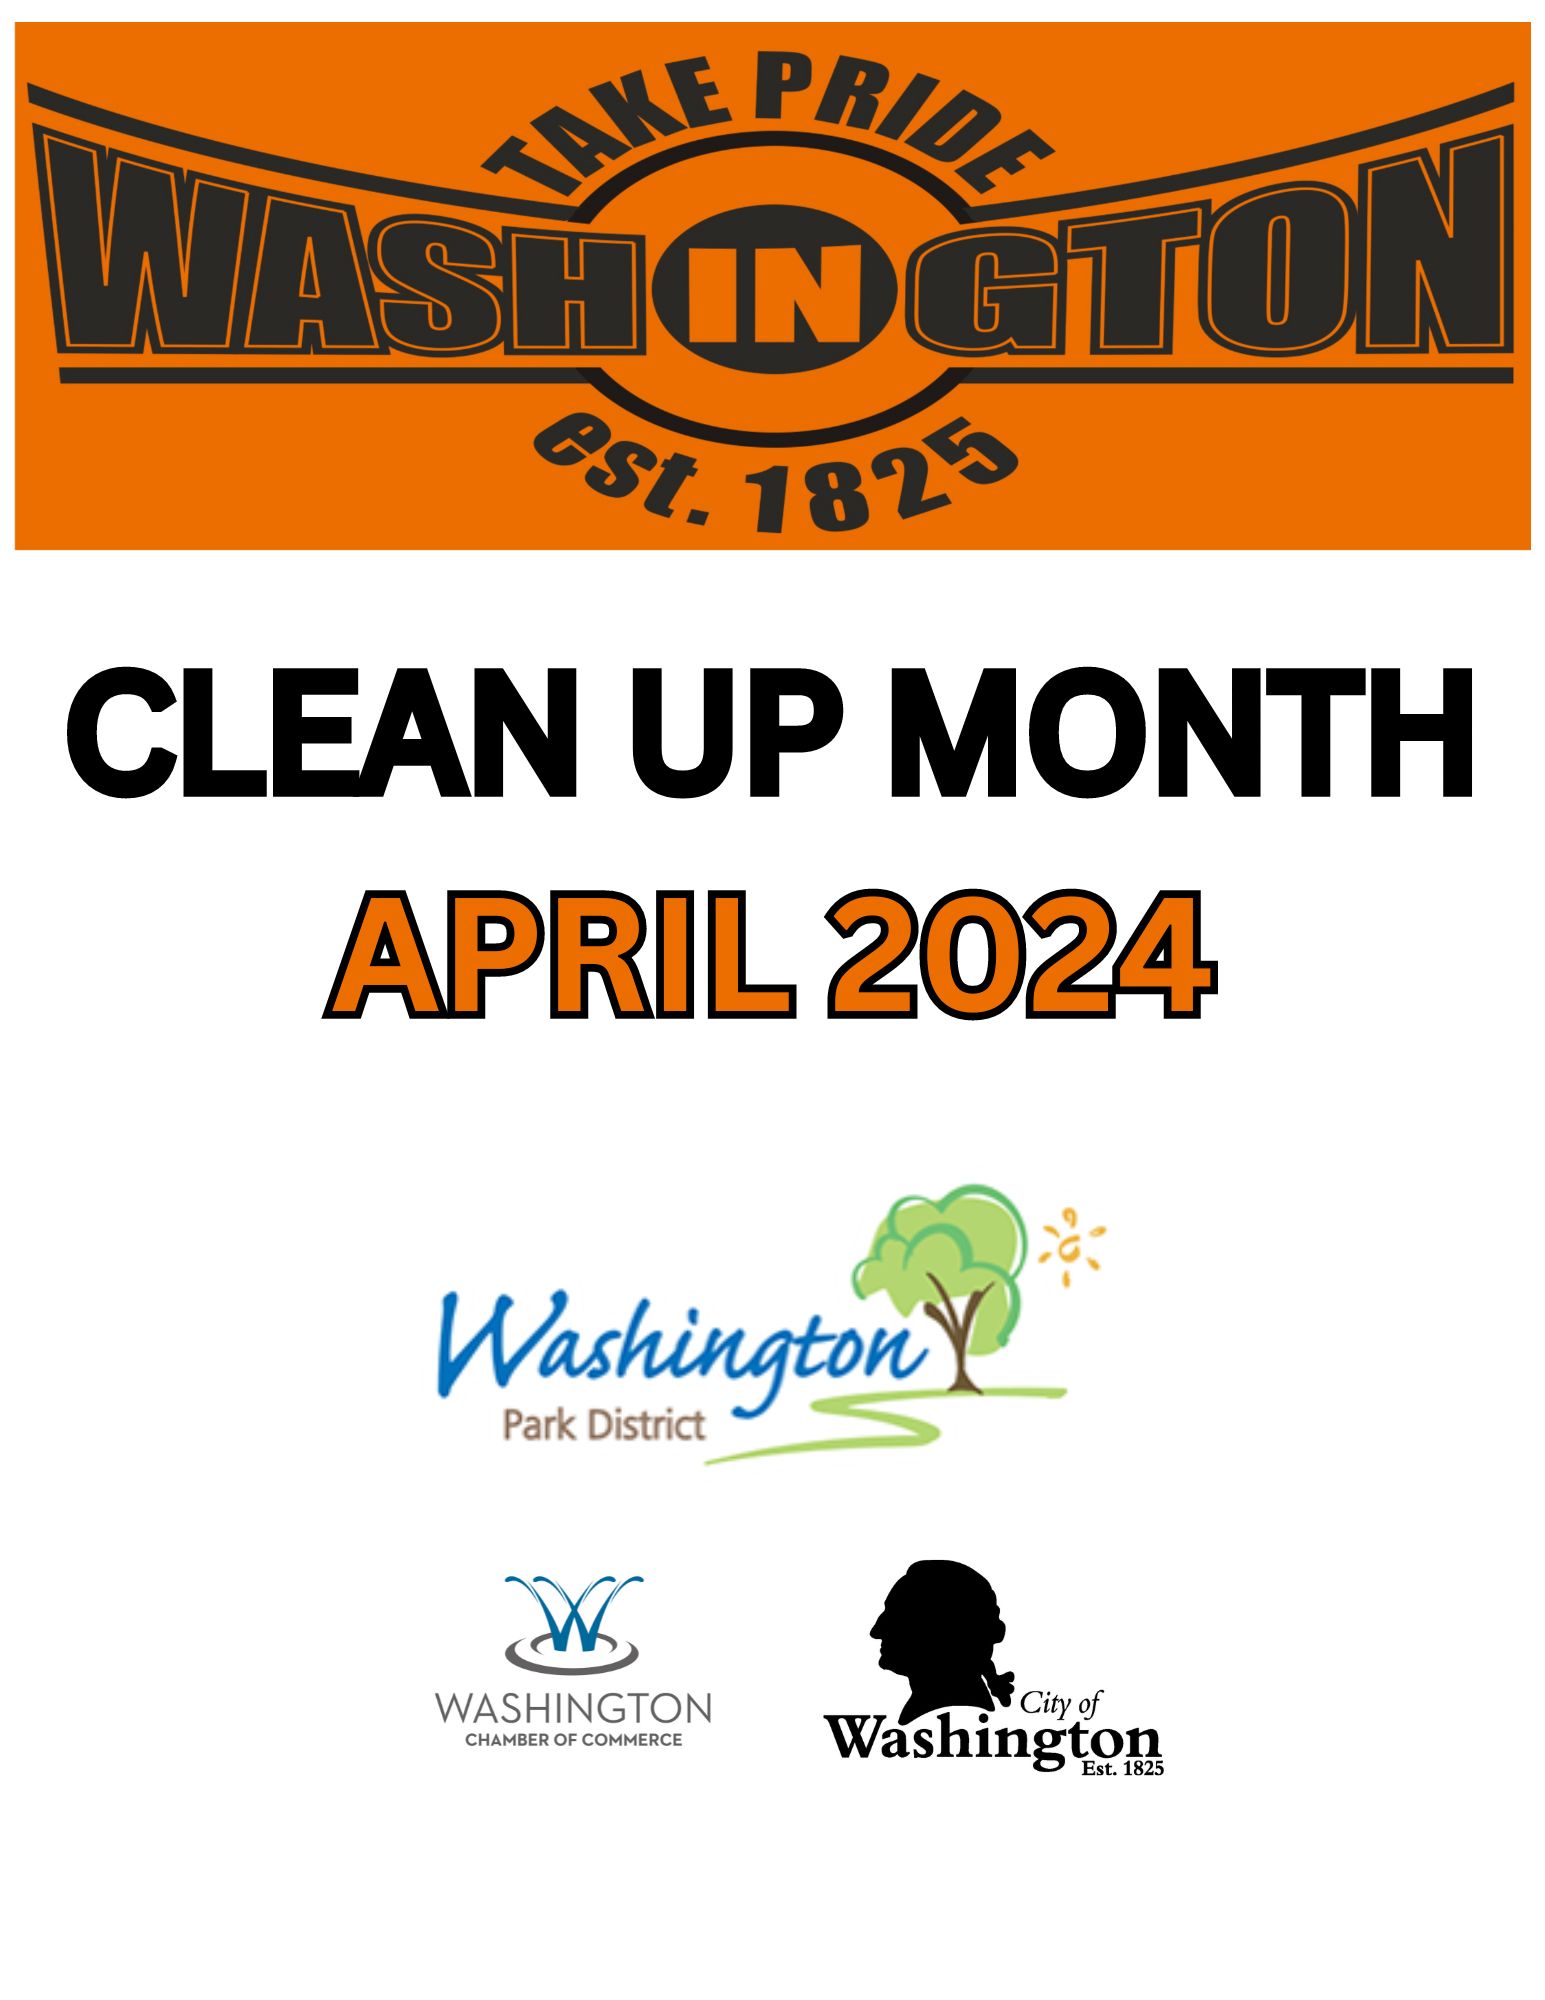 Clean UP MONTH APRIL 2024